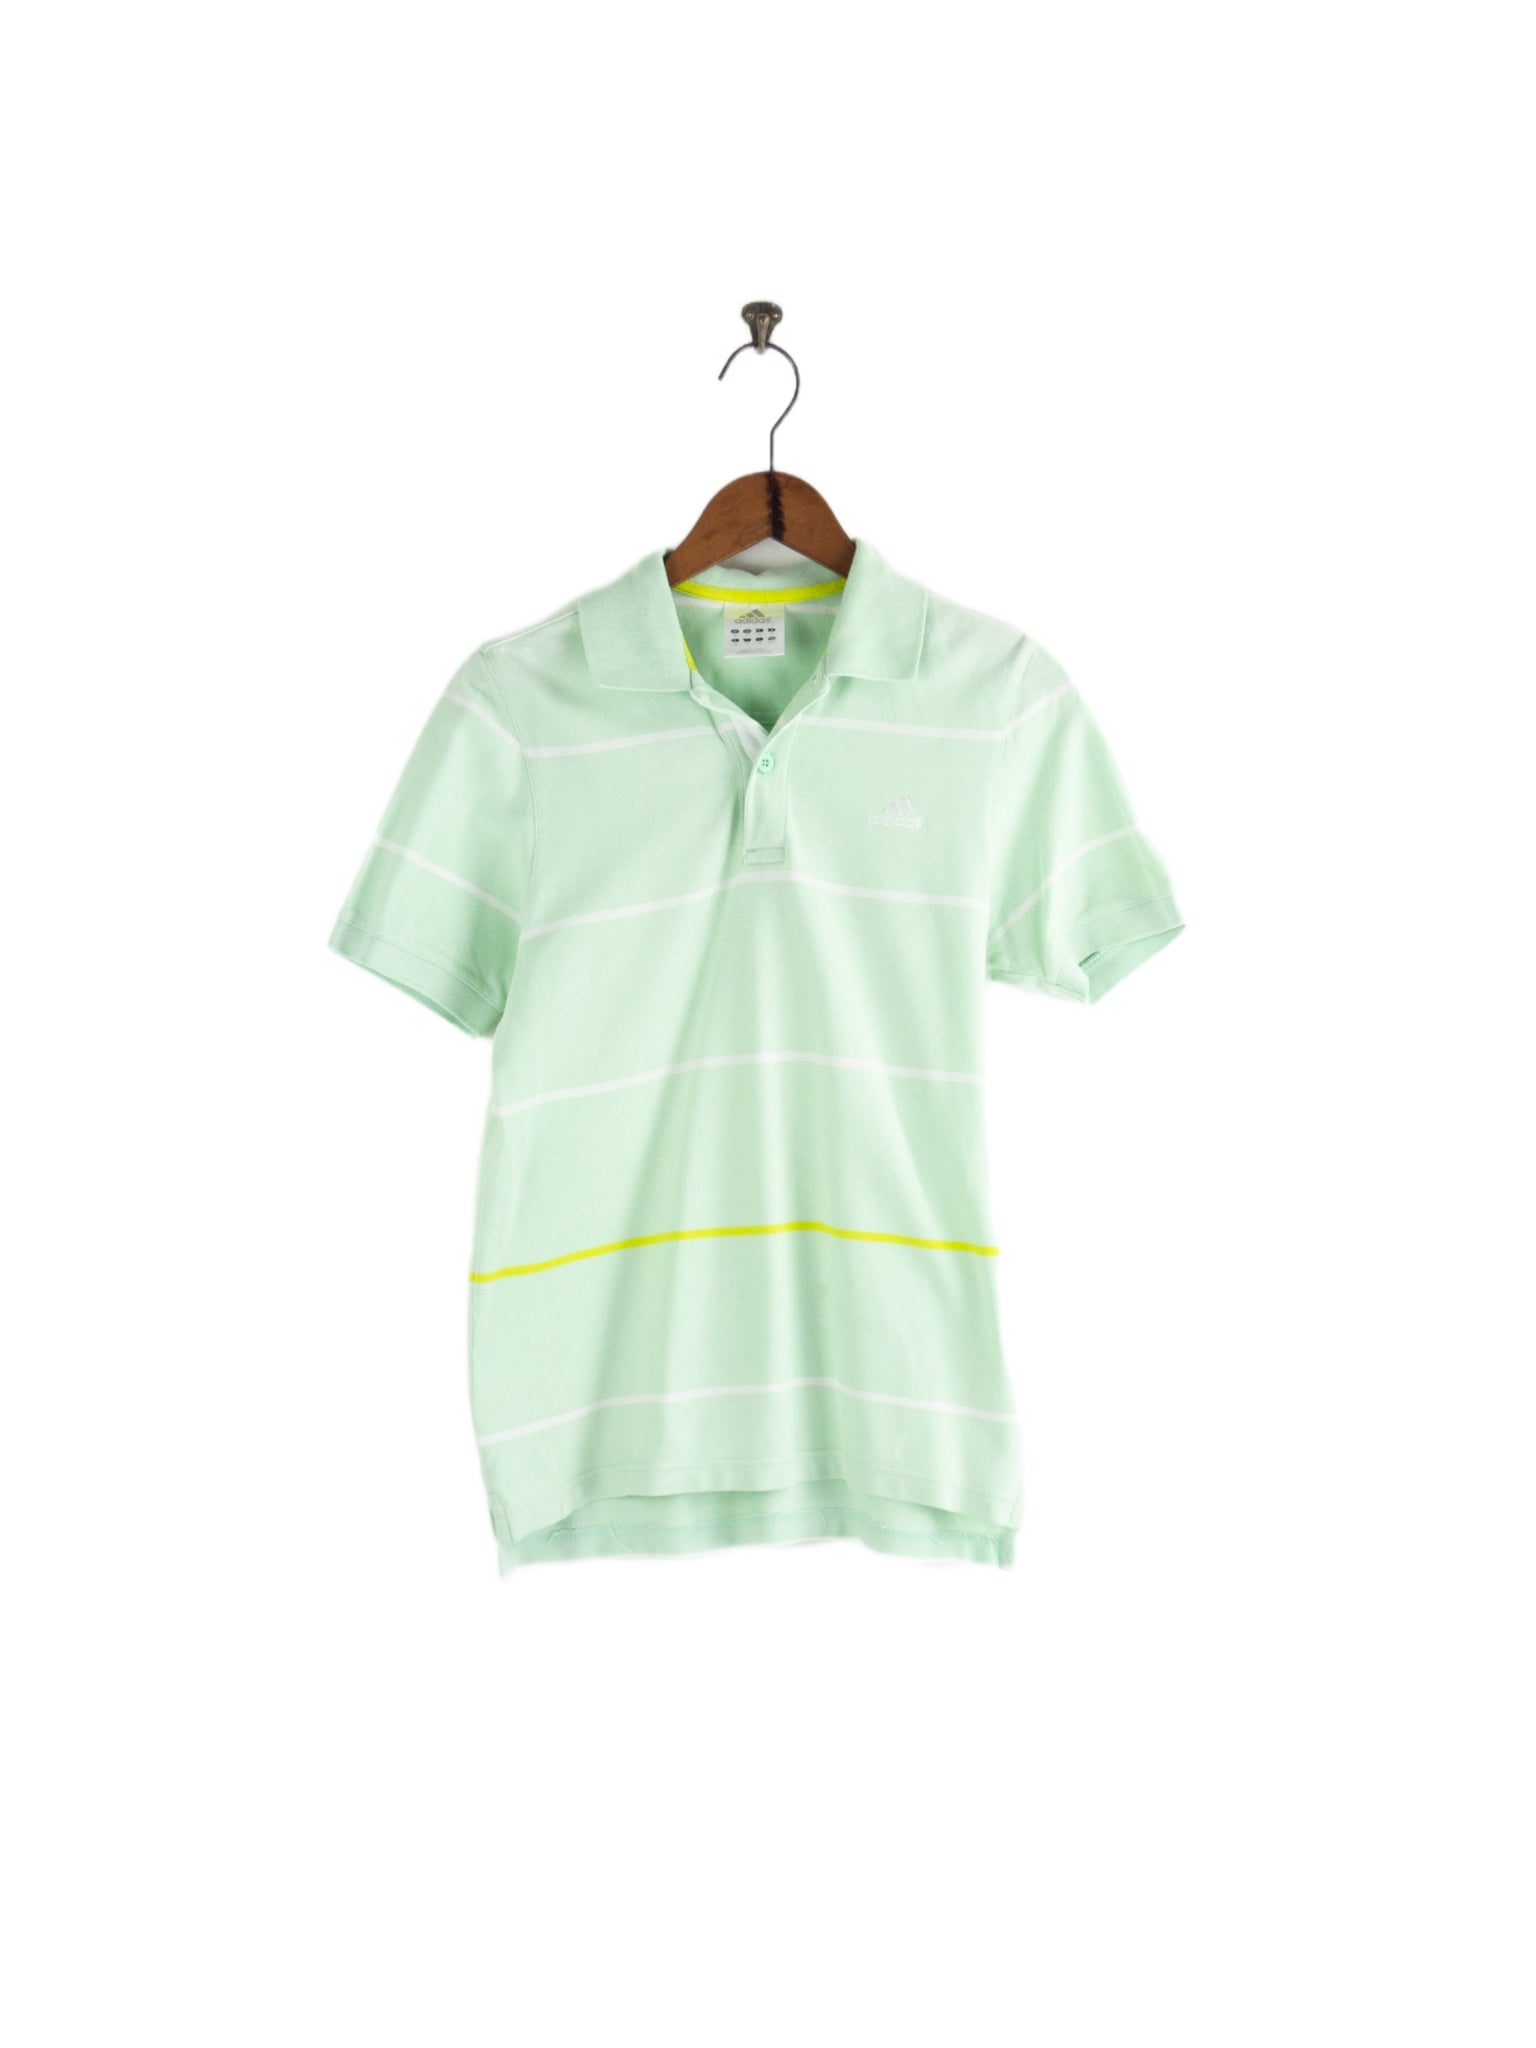 Adidas mintgrünes Poloshirt S